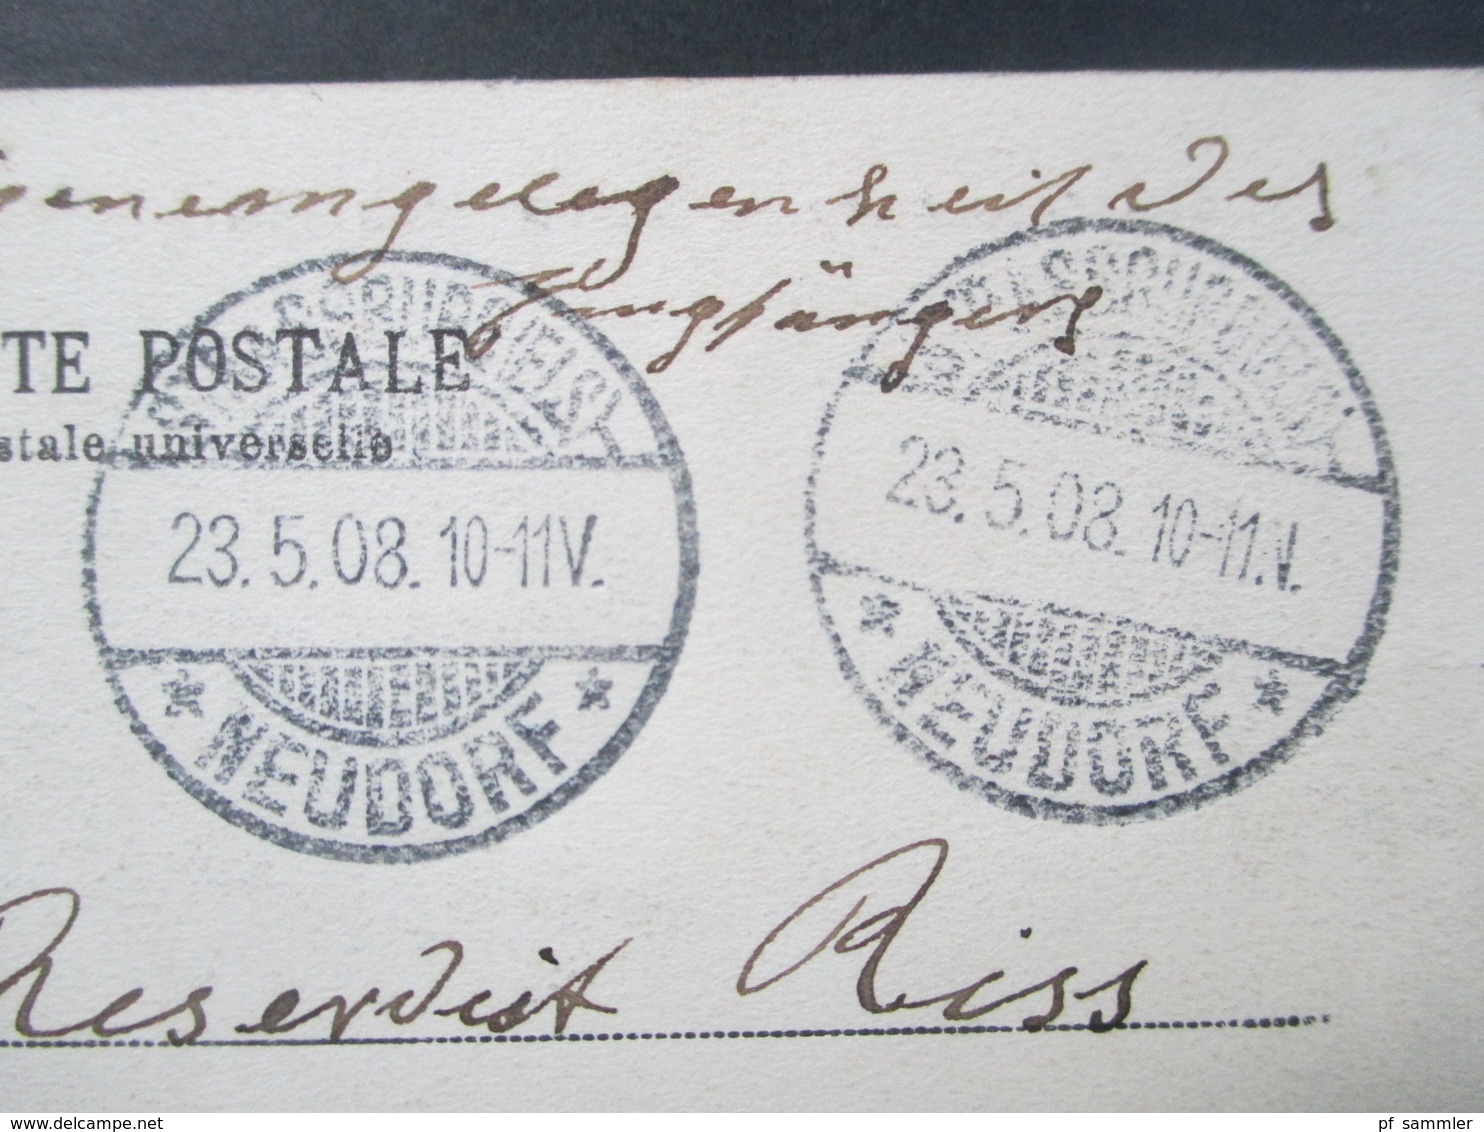 AK DR / Elsass 1908 Alt - Strassburg Vieux Strasbourg. Soldatenkarte Portofrei Weitergeleitet! - Elsass